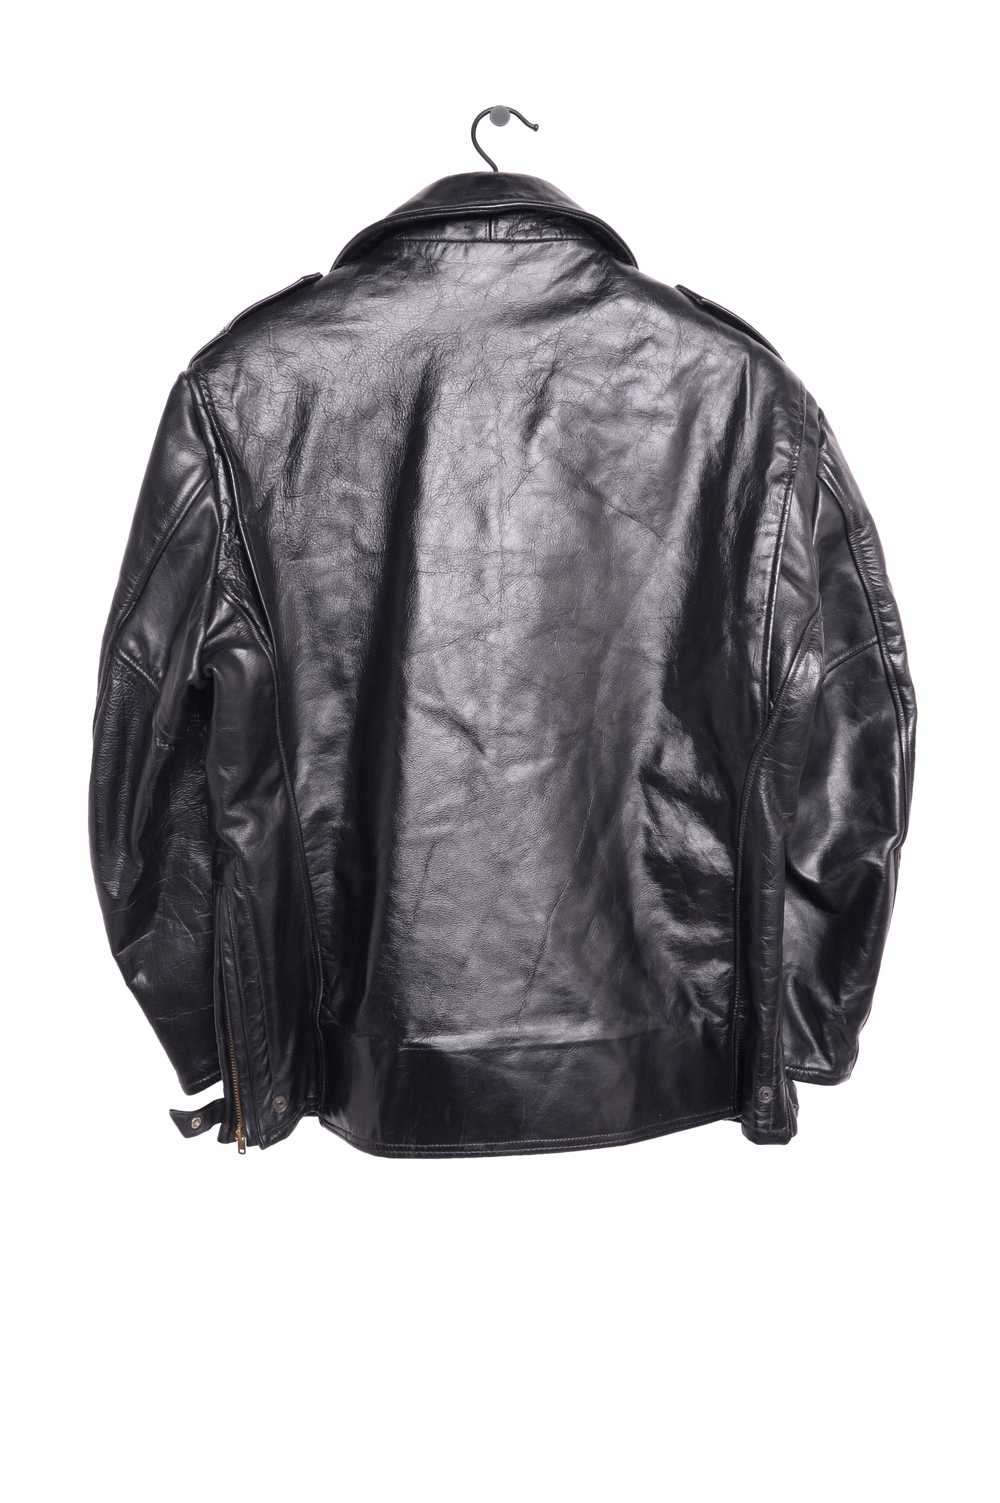 1960s Leather Jacket - image 2